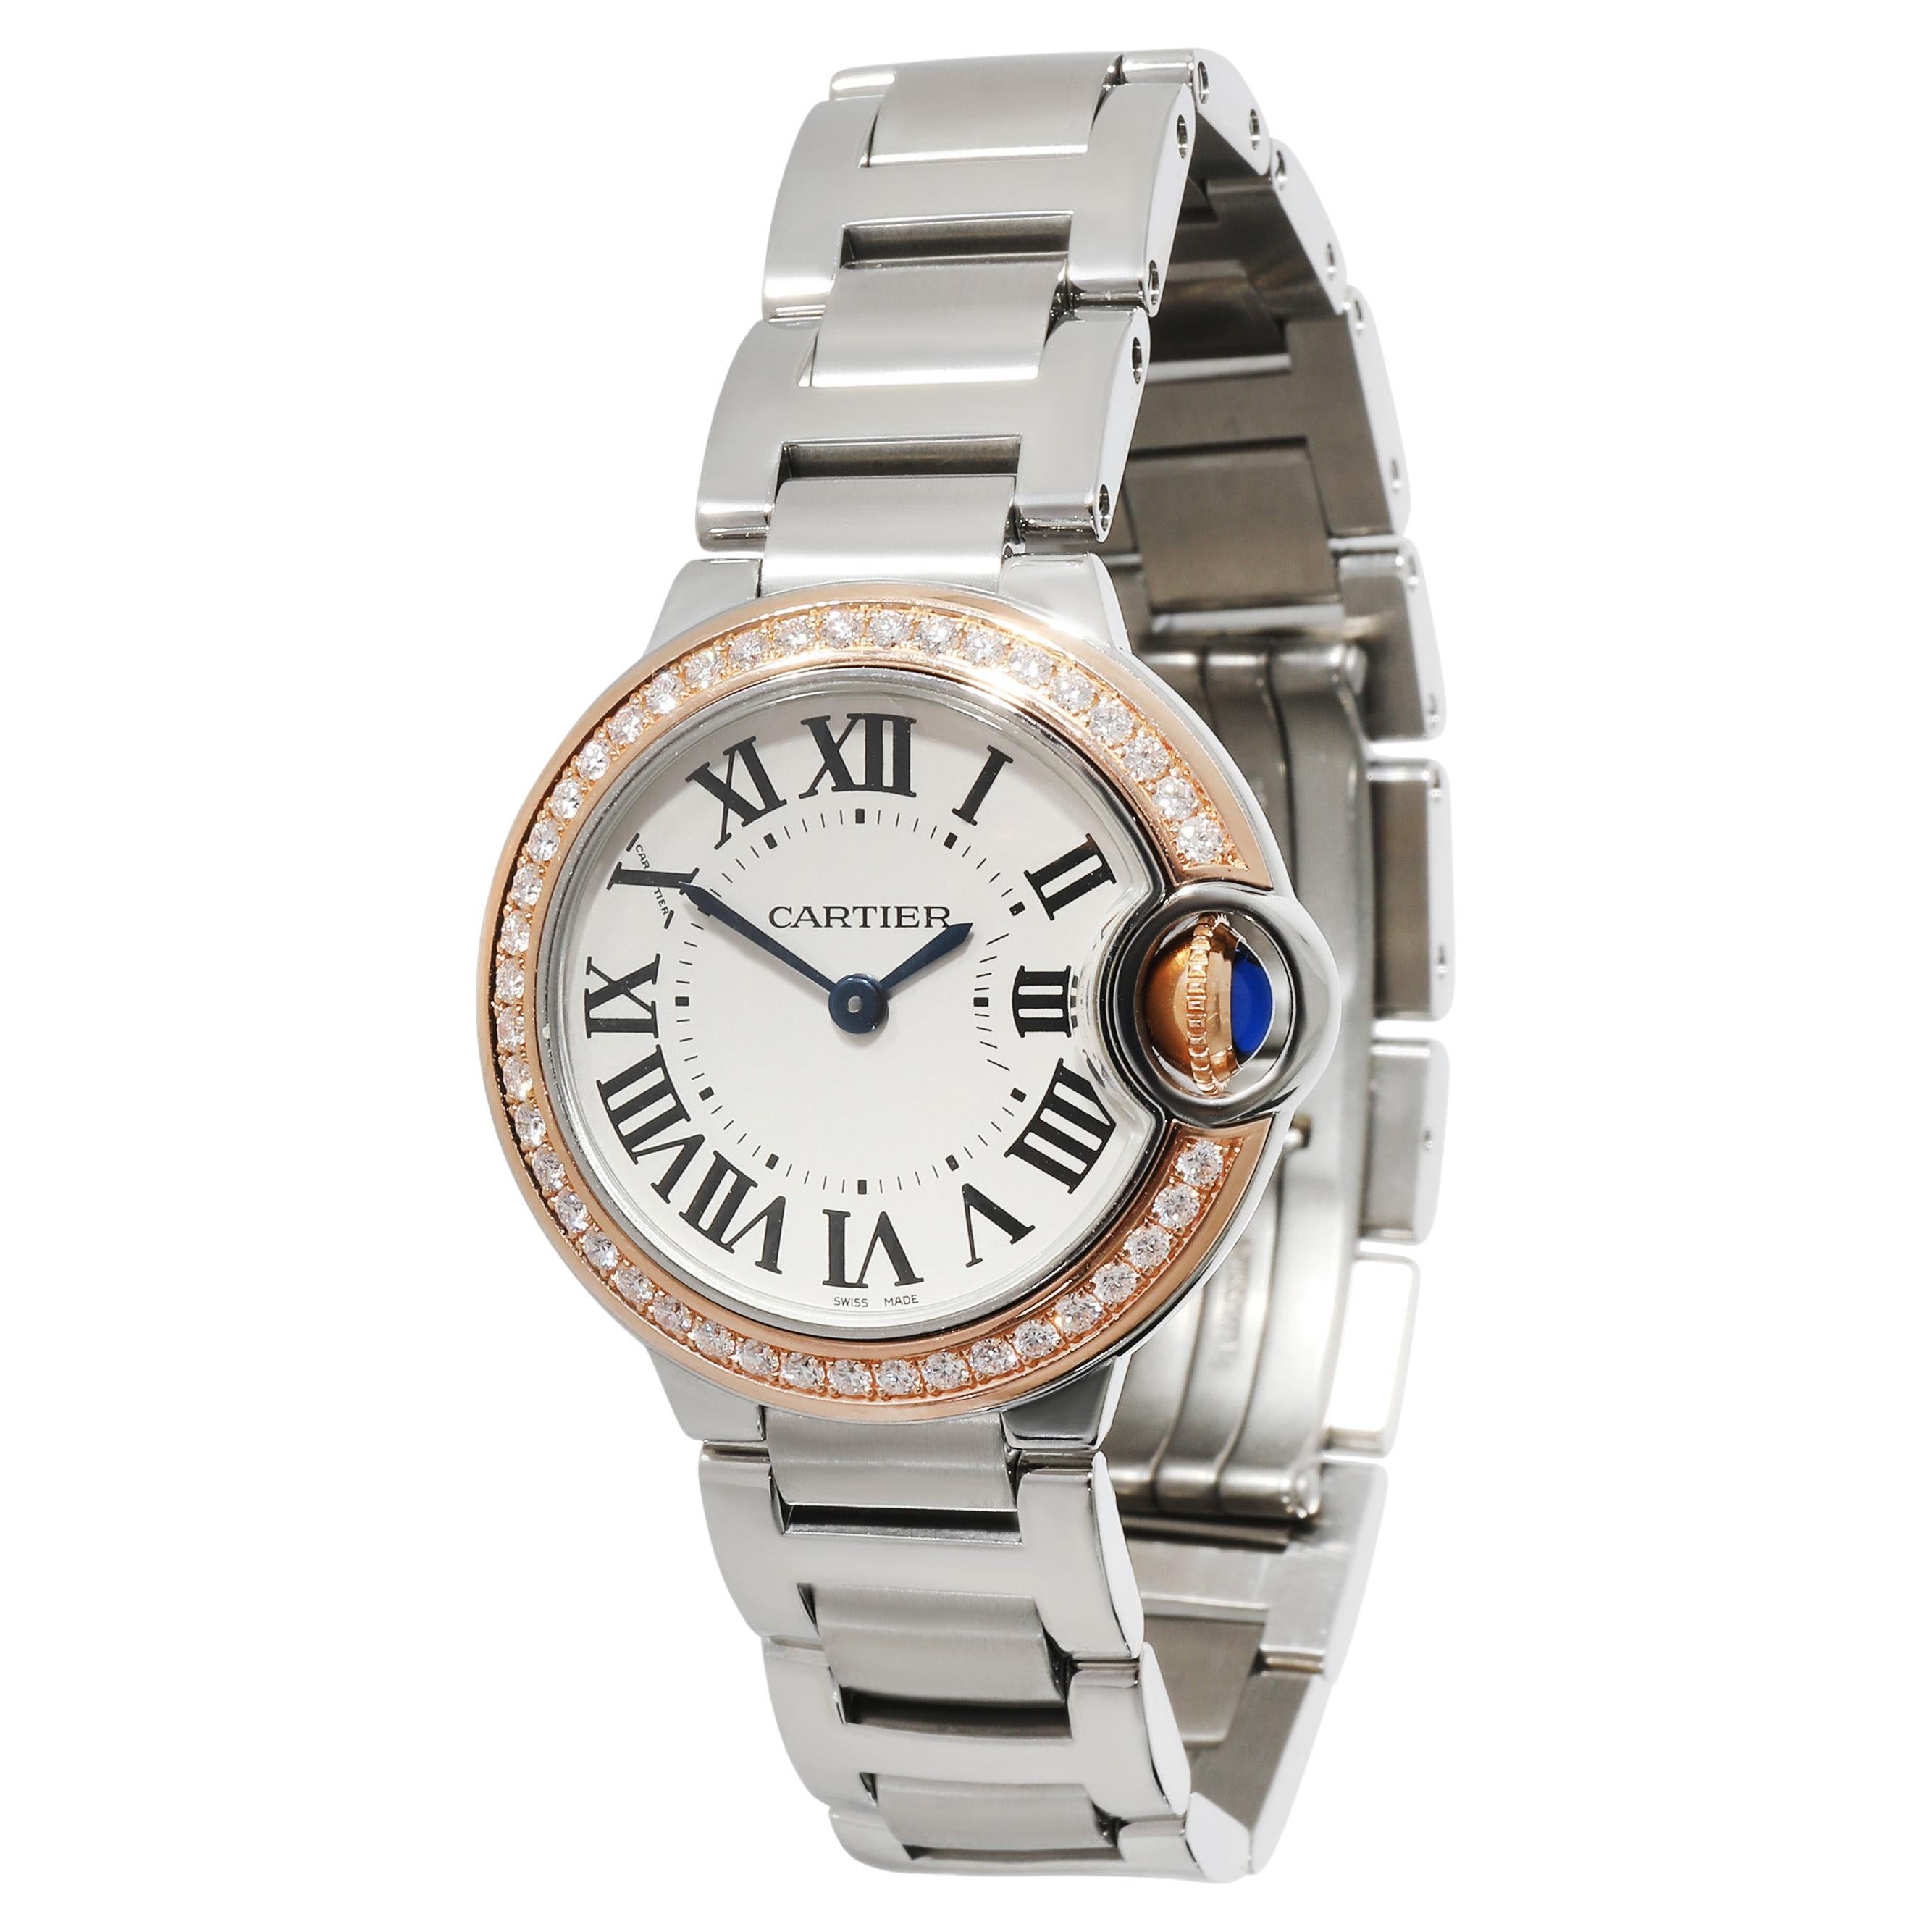 Cartier Ballon Bleu WE902079 Women's Watch in 18kt Stainless Steel/Rose Gold